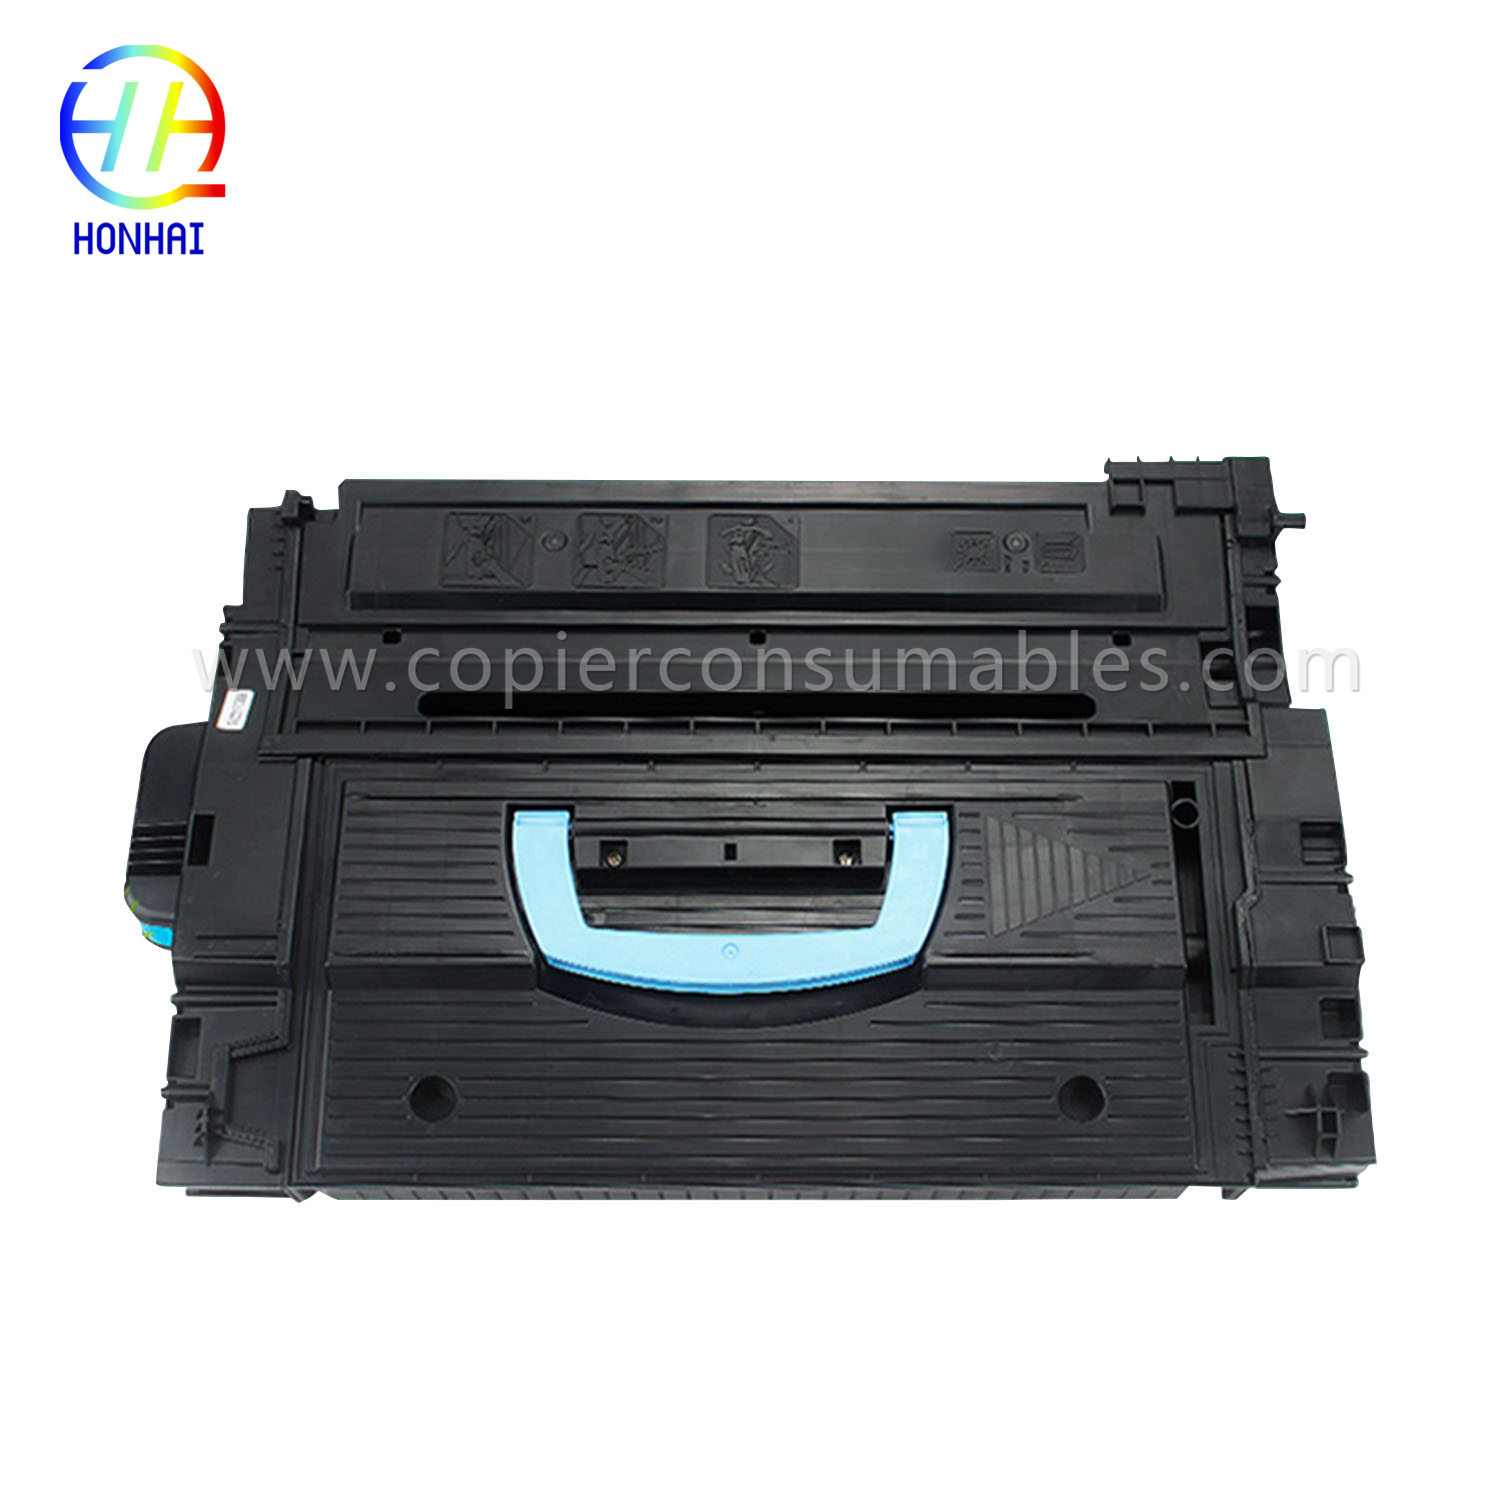 Toner Cartridge for HP 9040 9050 9059